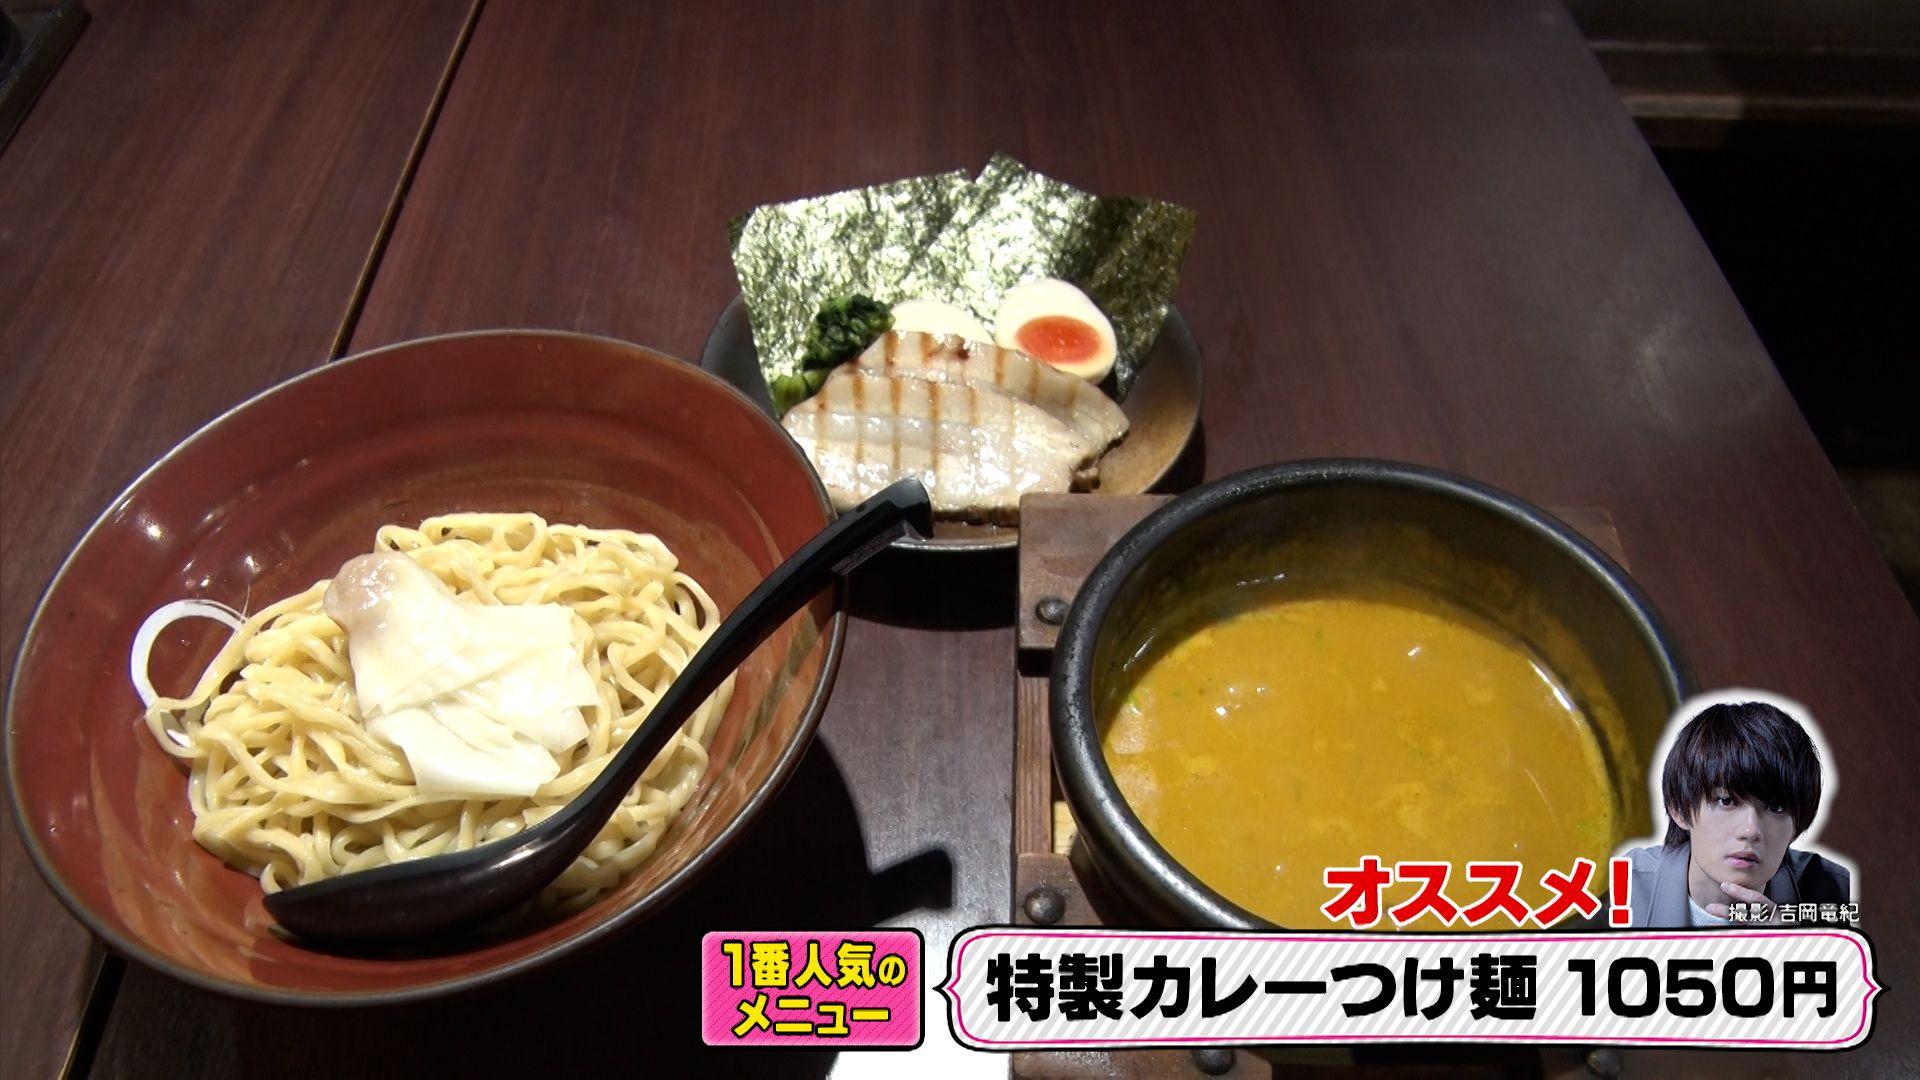 佐野勇斗 週に1回は食べるカレーつけ麺を紹介！「M!LKのメンバーとも、1人でも行きます」